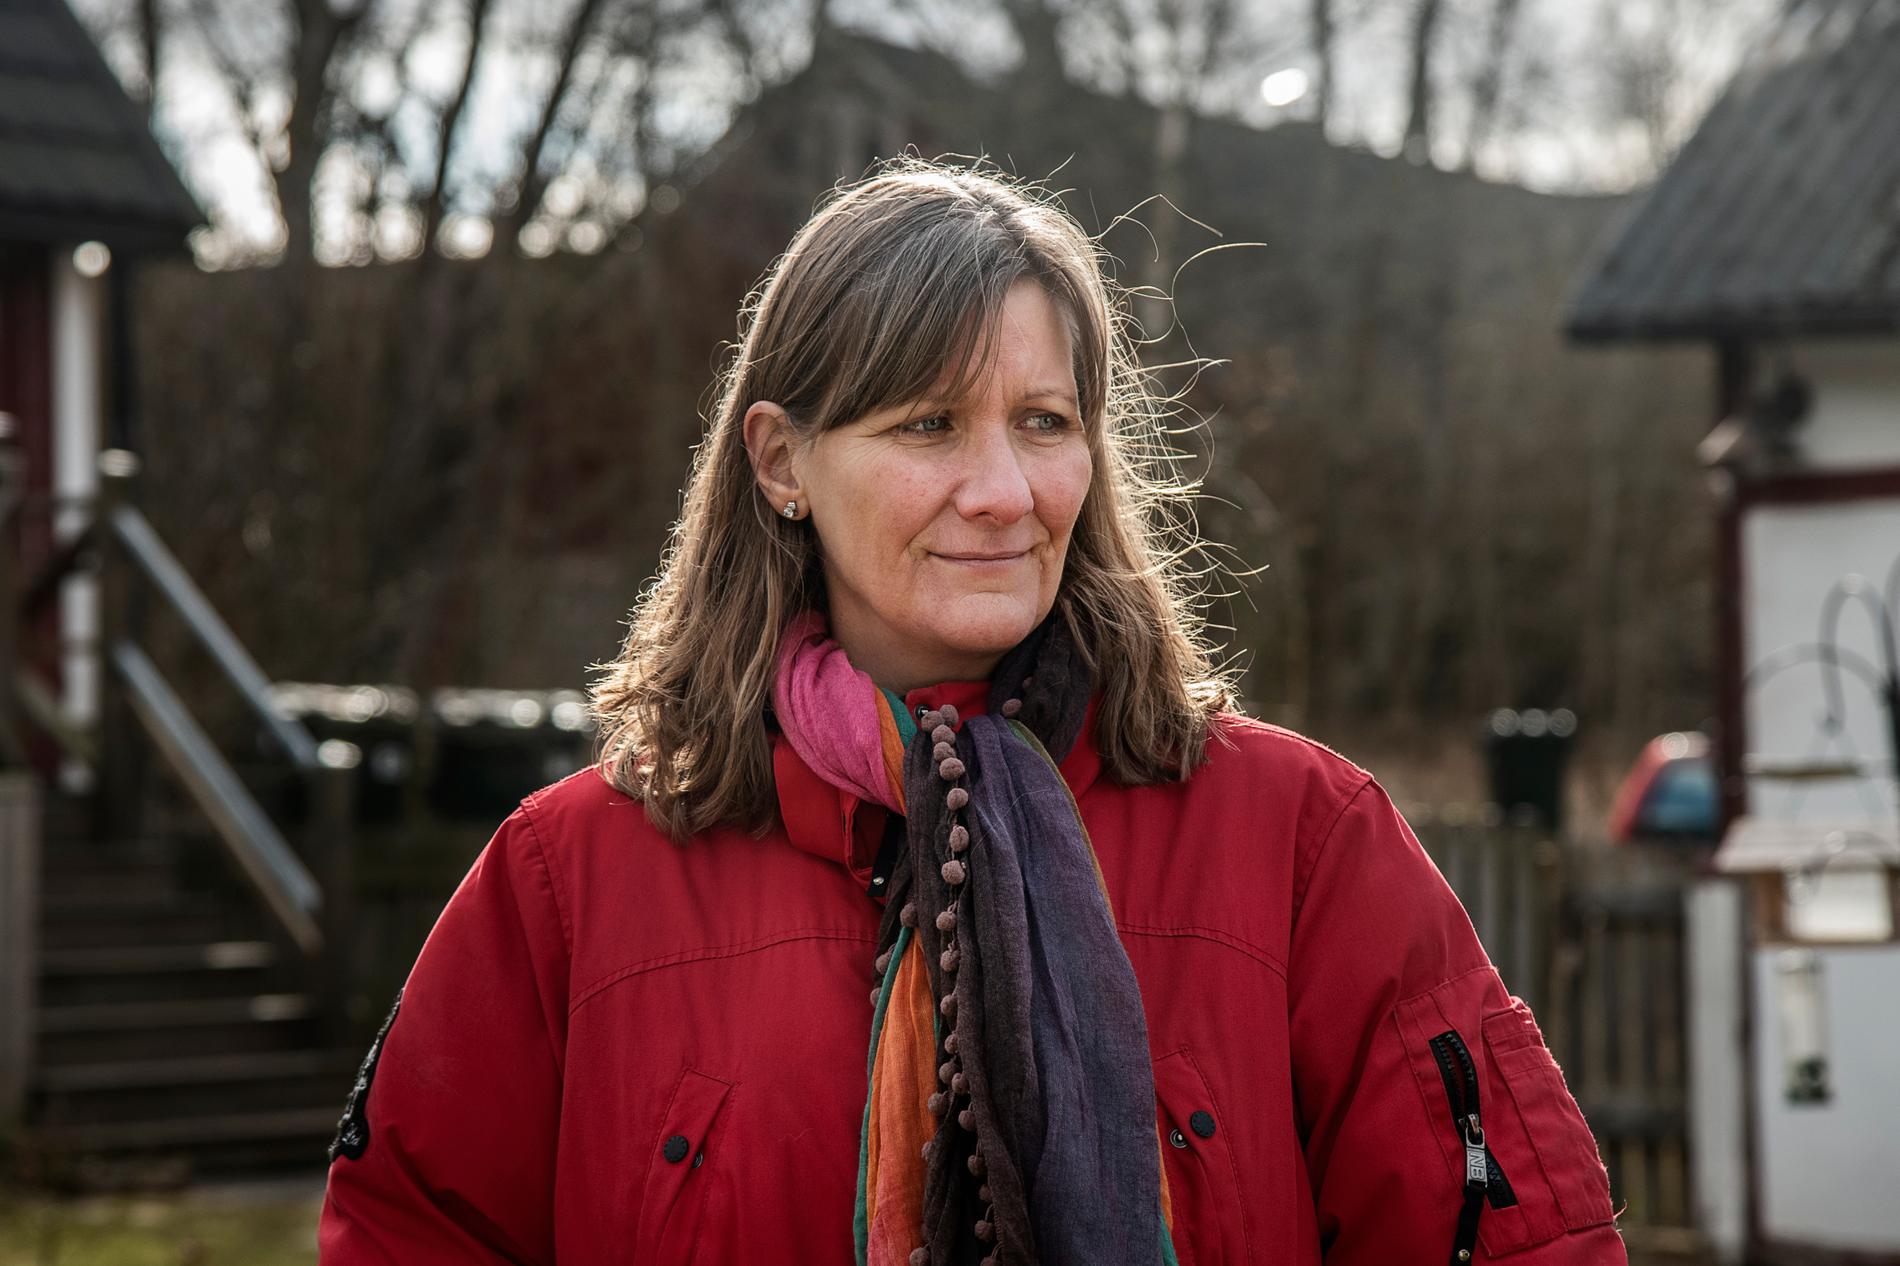 Åsa Nilsson, hästägare och boende i byn, är orolig för att tågspåren kommer förstöra naturen och det fridfulla livet som hon älskar.